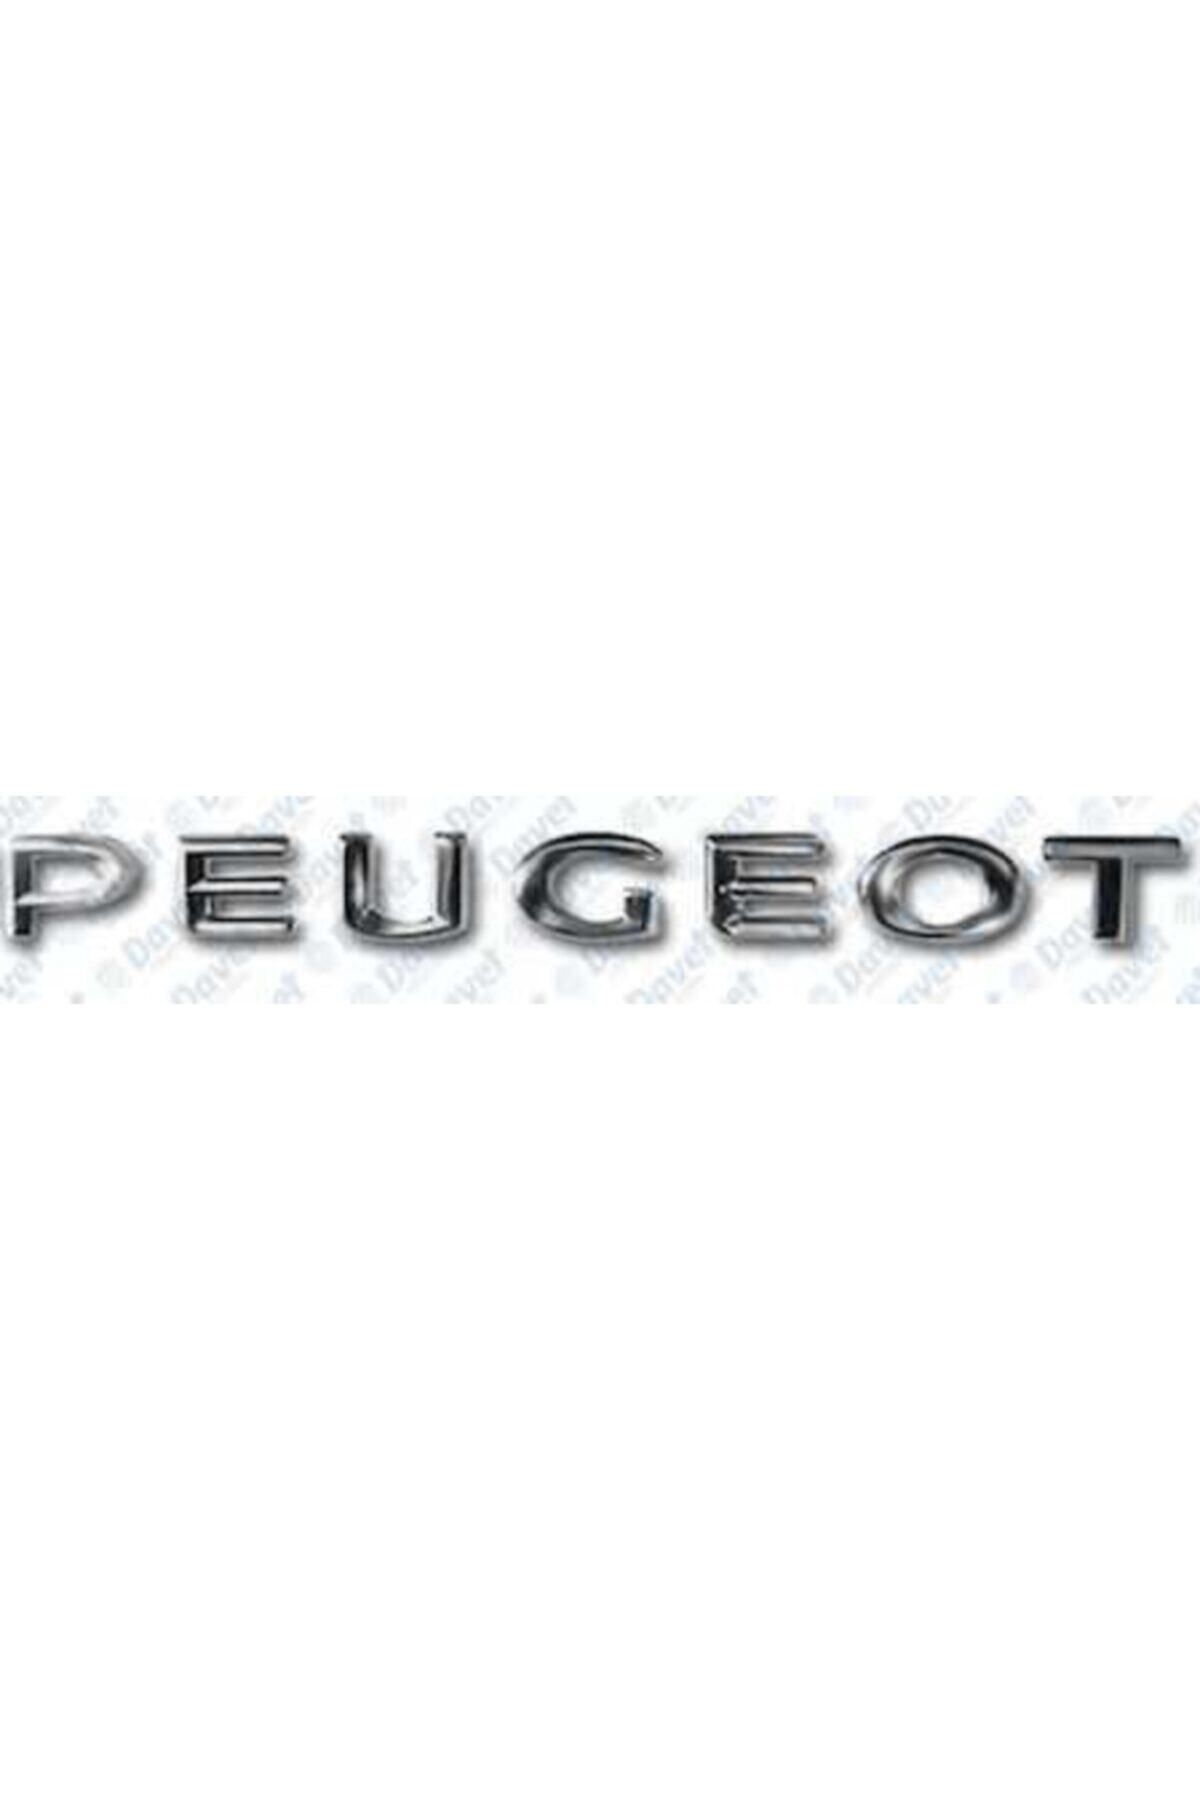 EDEXPORT Bagaj Kapak Yazısı Peugeot 301 1217 106 99